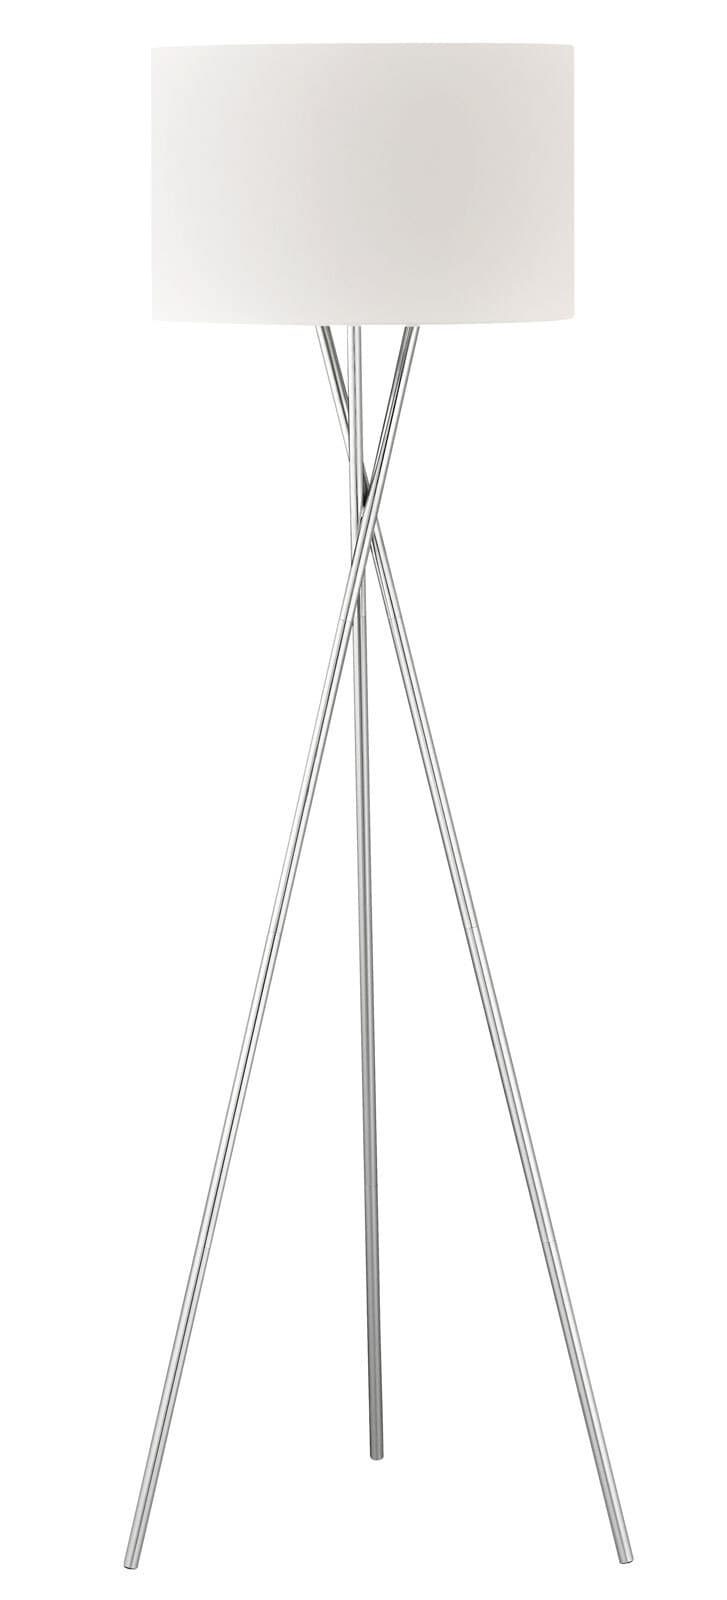 SCHÖNER WOHNEN-Kollektion Stehlampe PINA 160 cm weiß